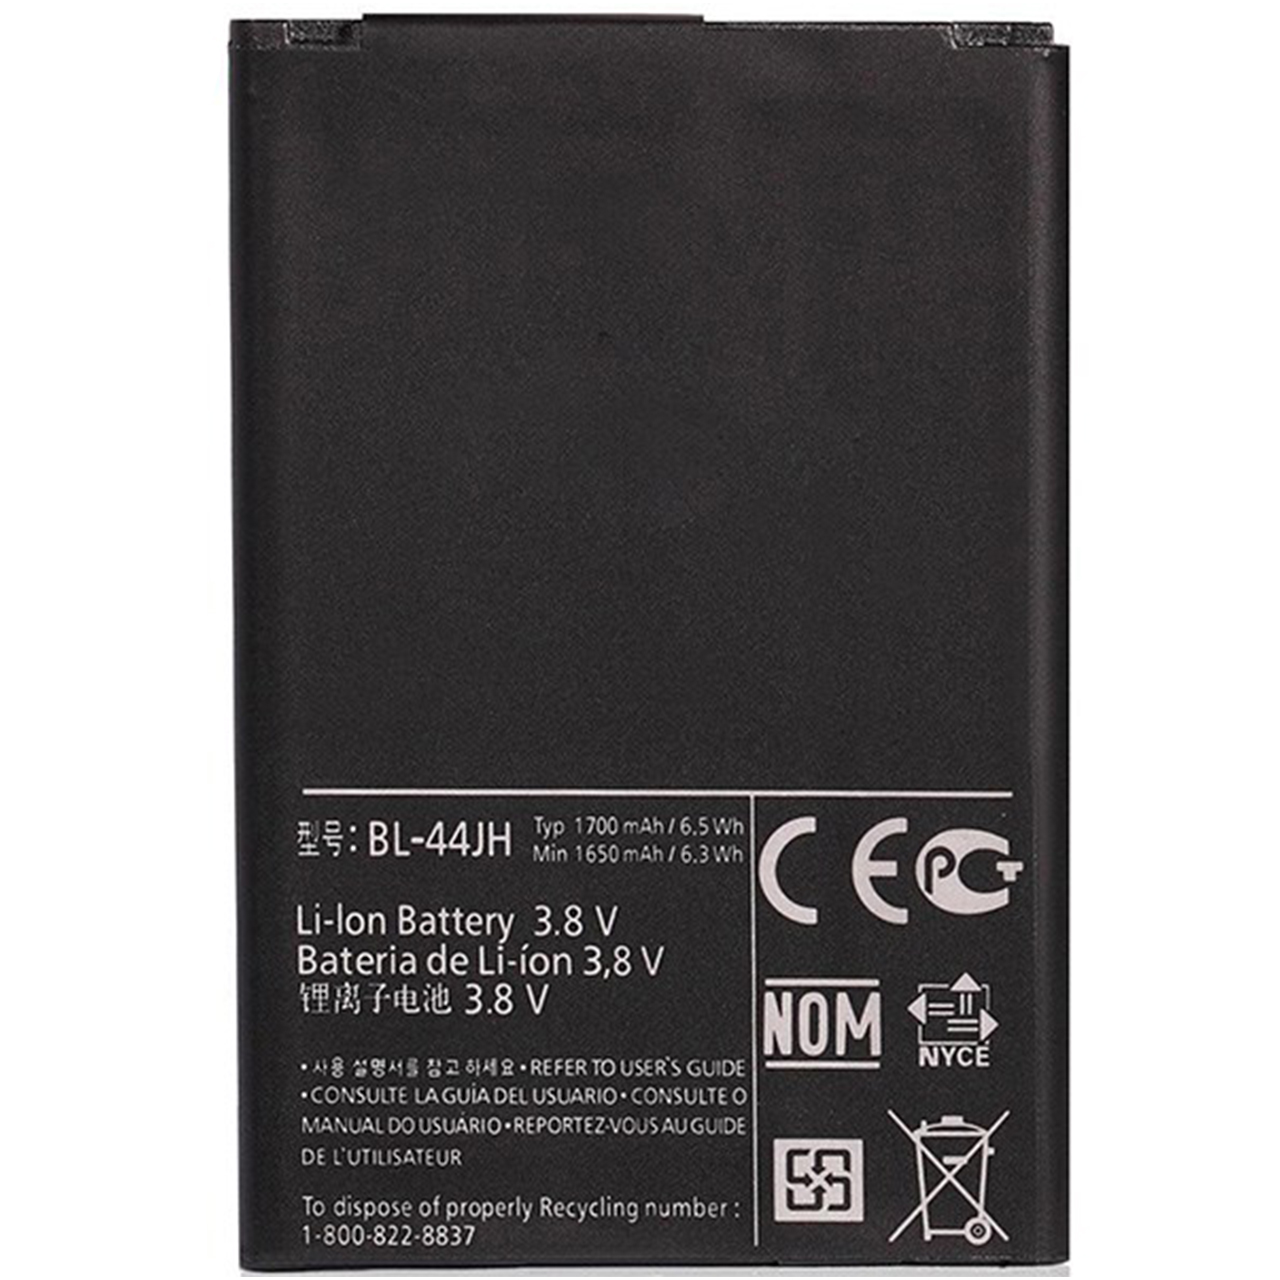 باتری ال جی مدل D160 با ظرفیت 1650mAh مناسب برای گوشی موبایل D160